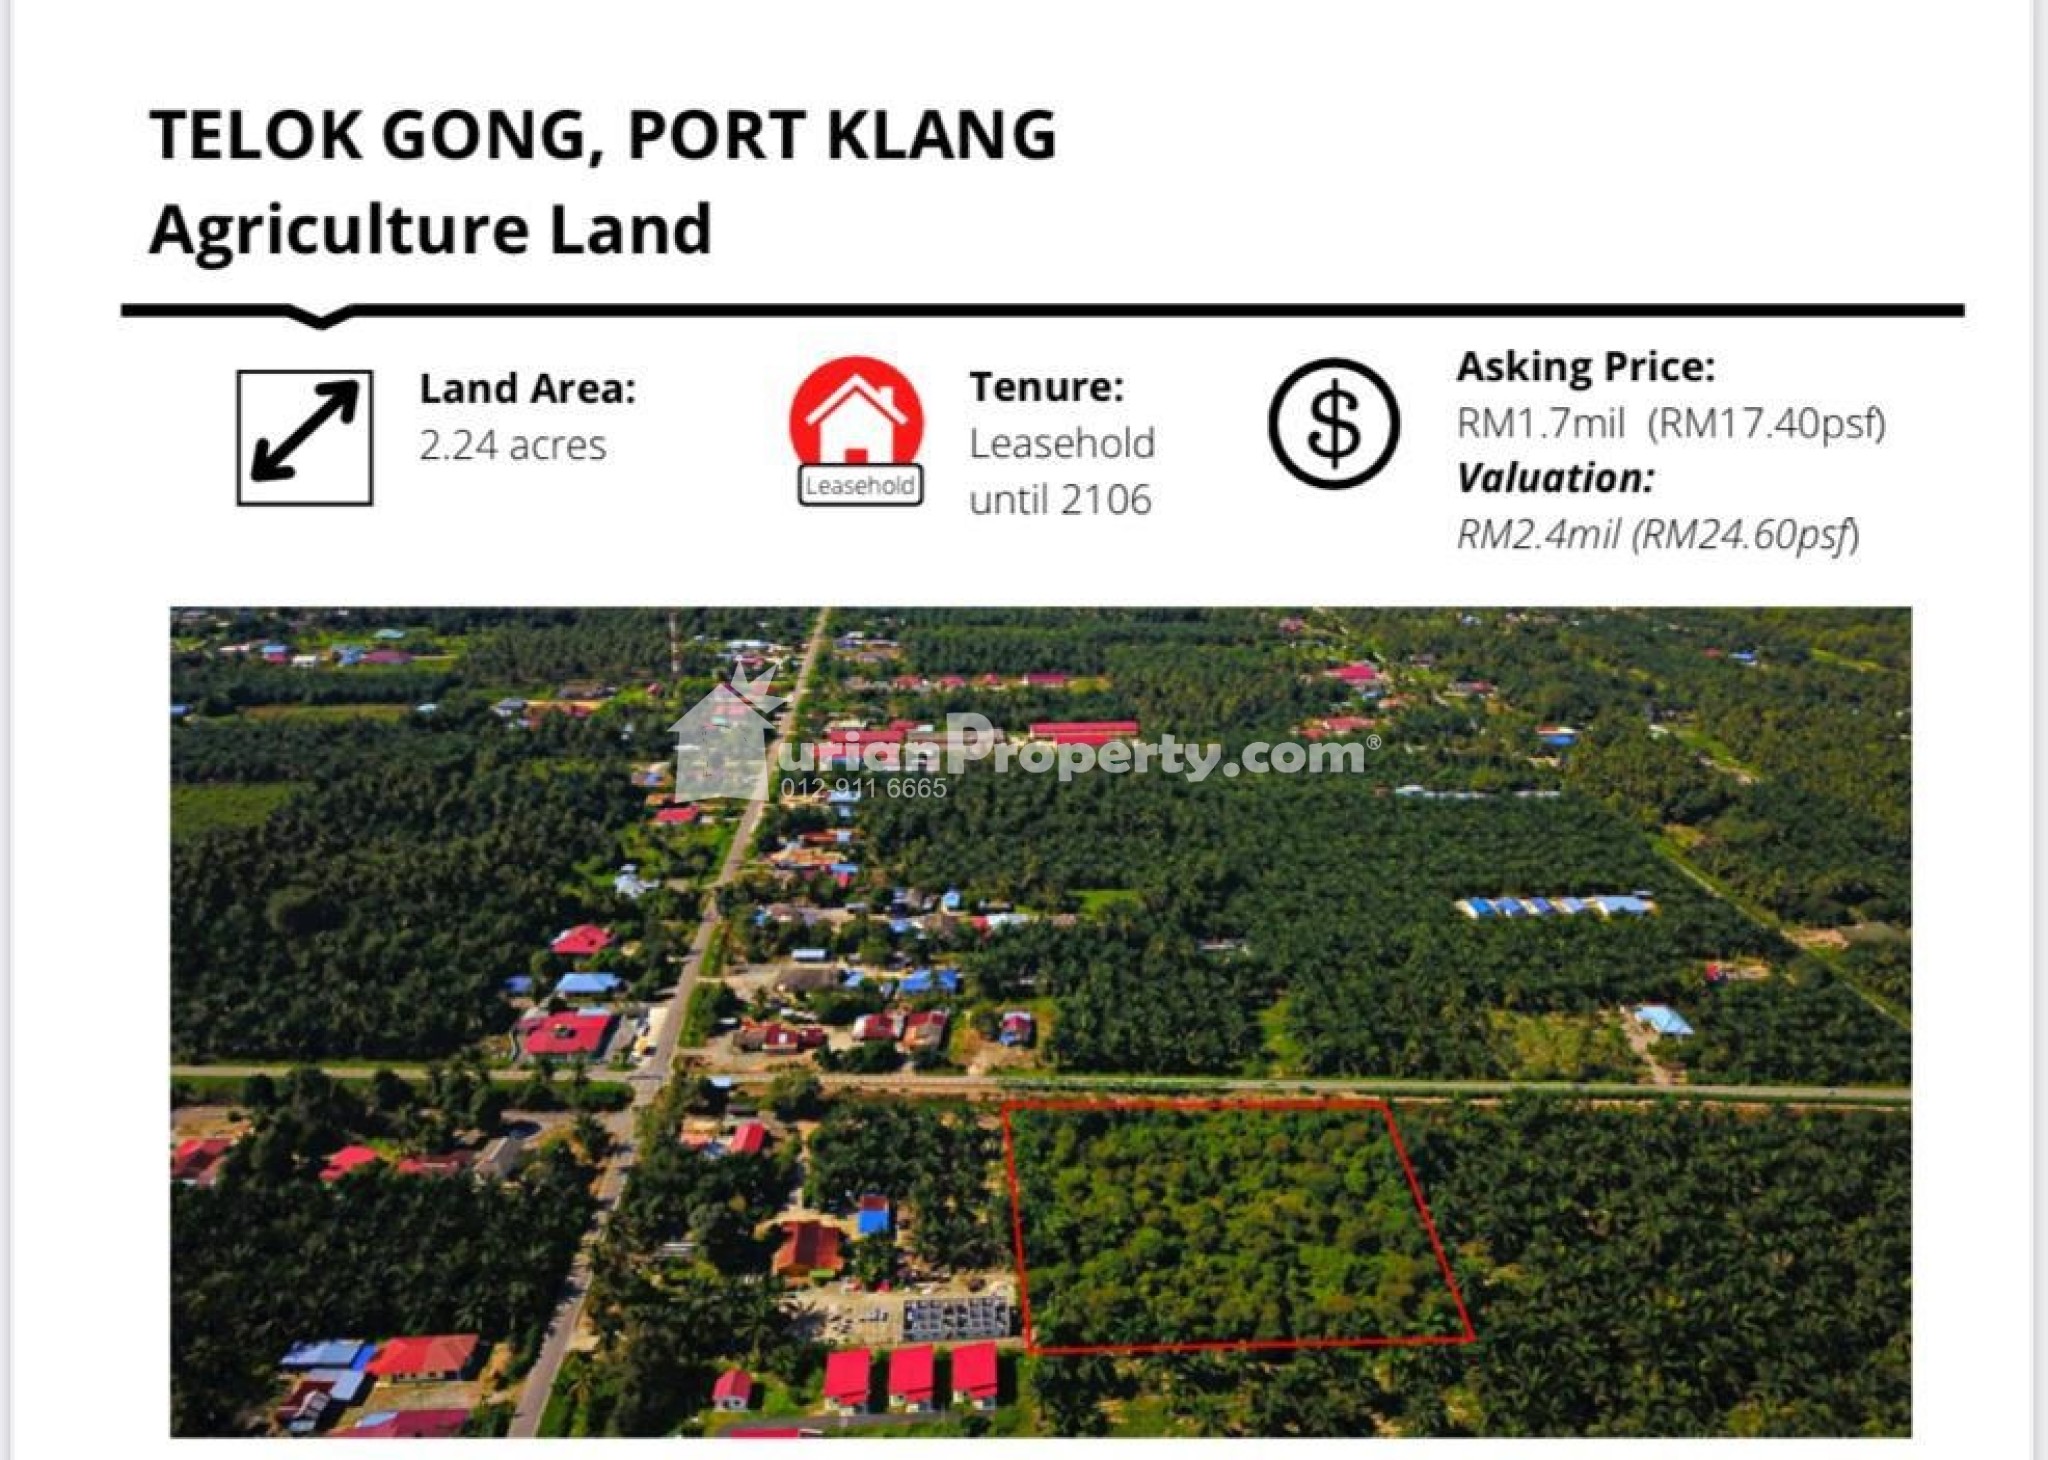 Agriculture Land For Sale at Port Klang